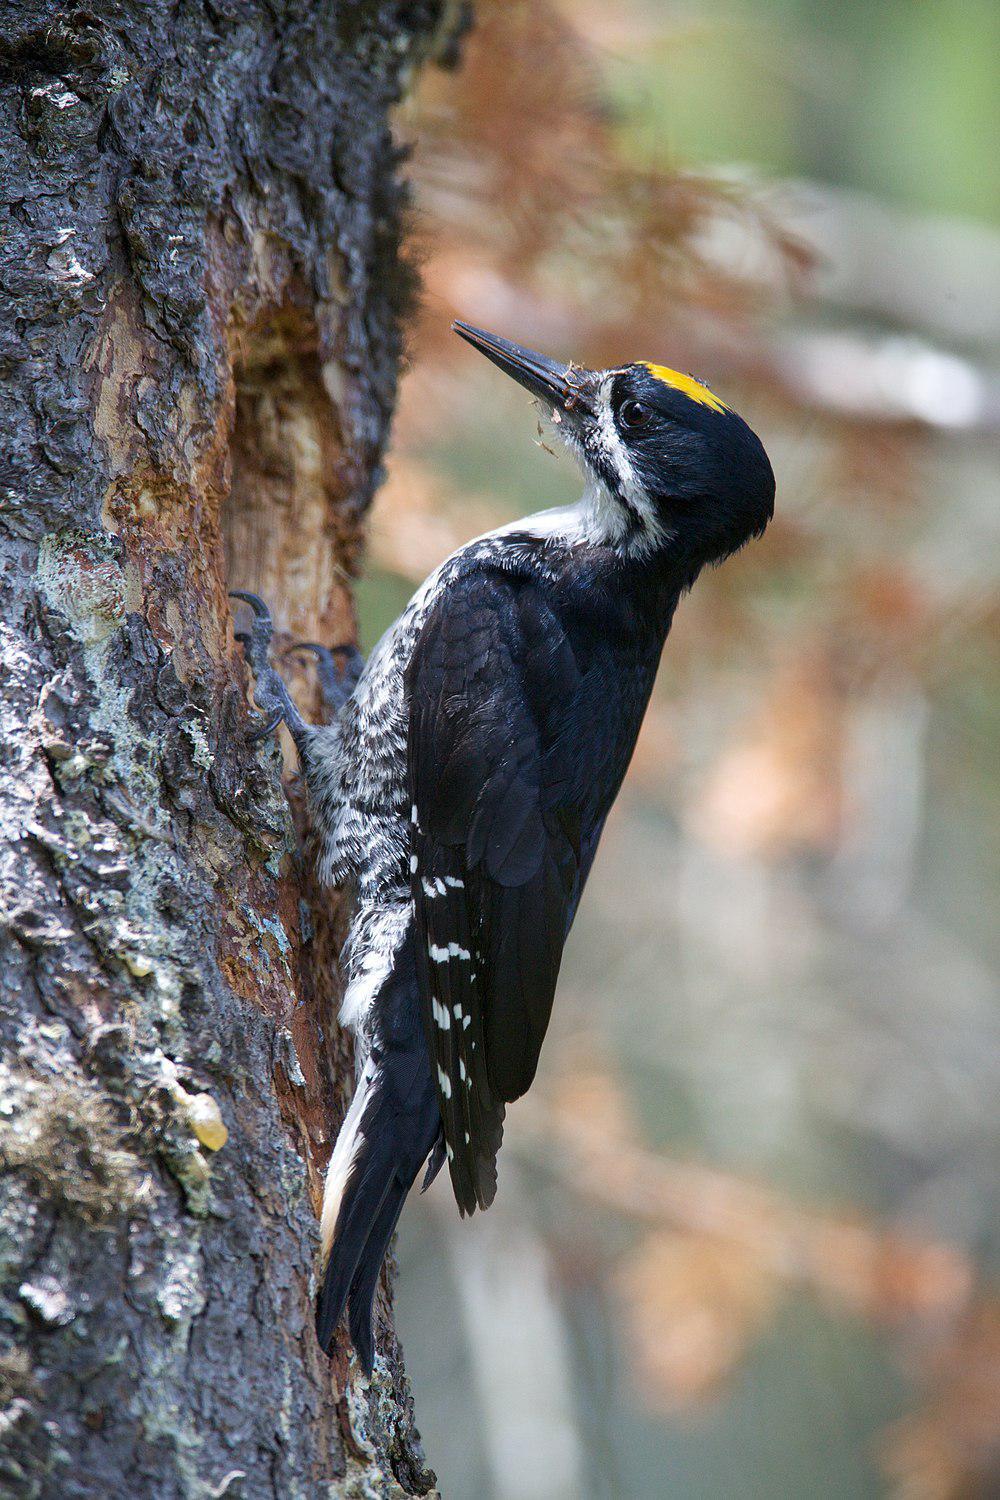 黑背啄木鸟 / Black-backed Woodpecker / Picoides arcticus